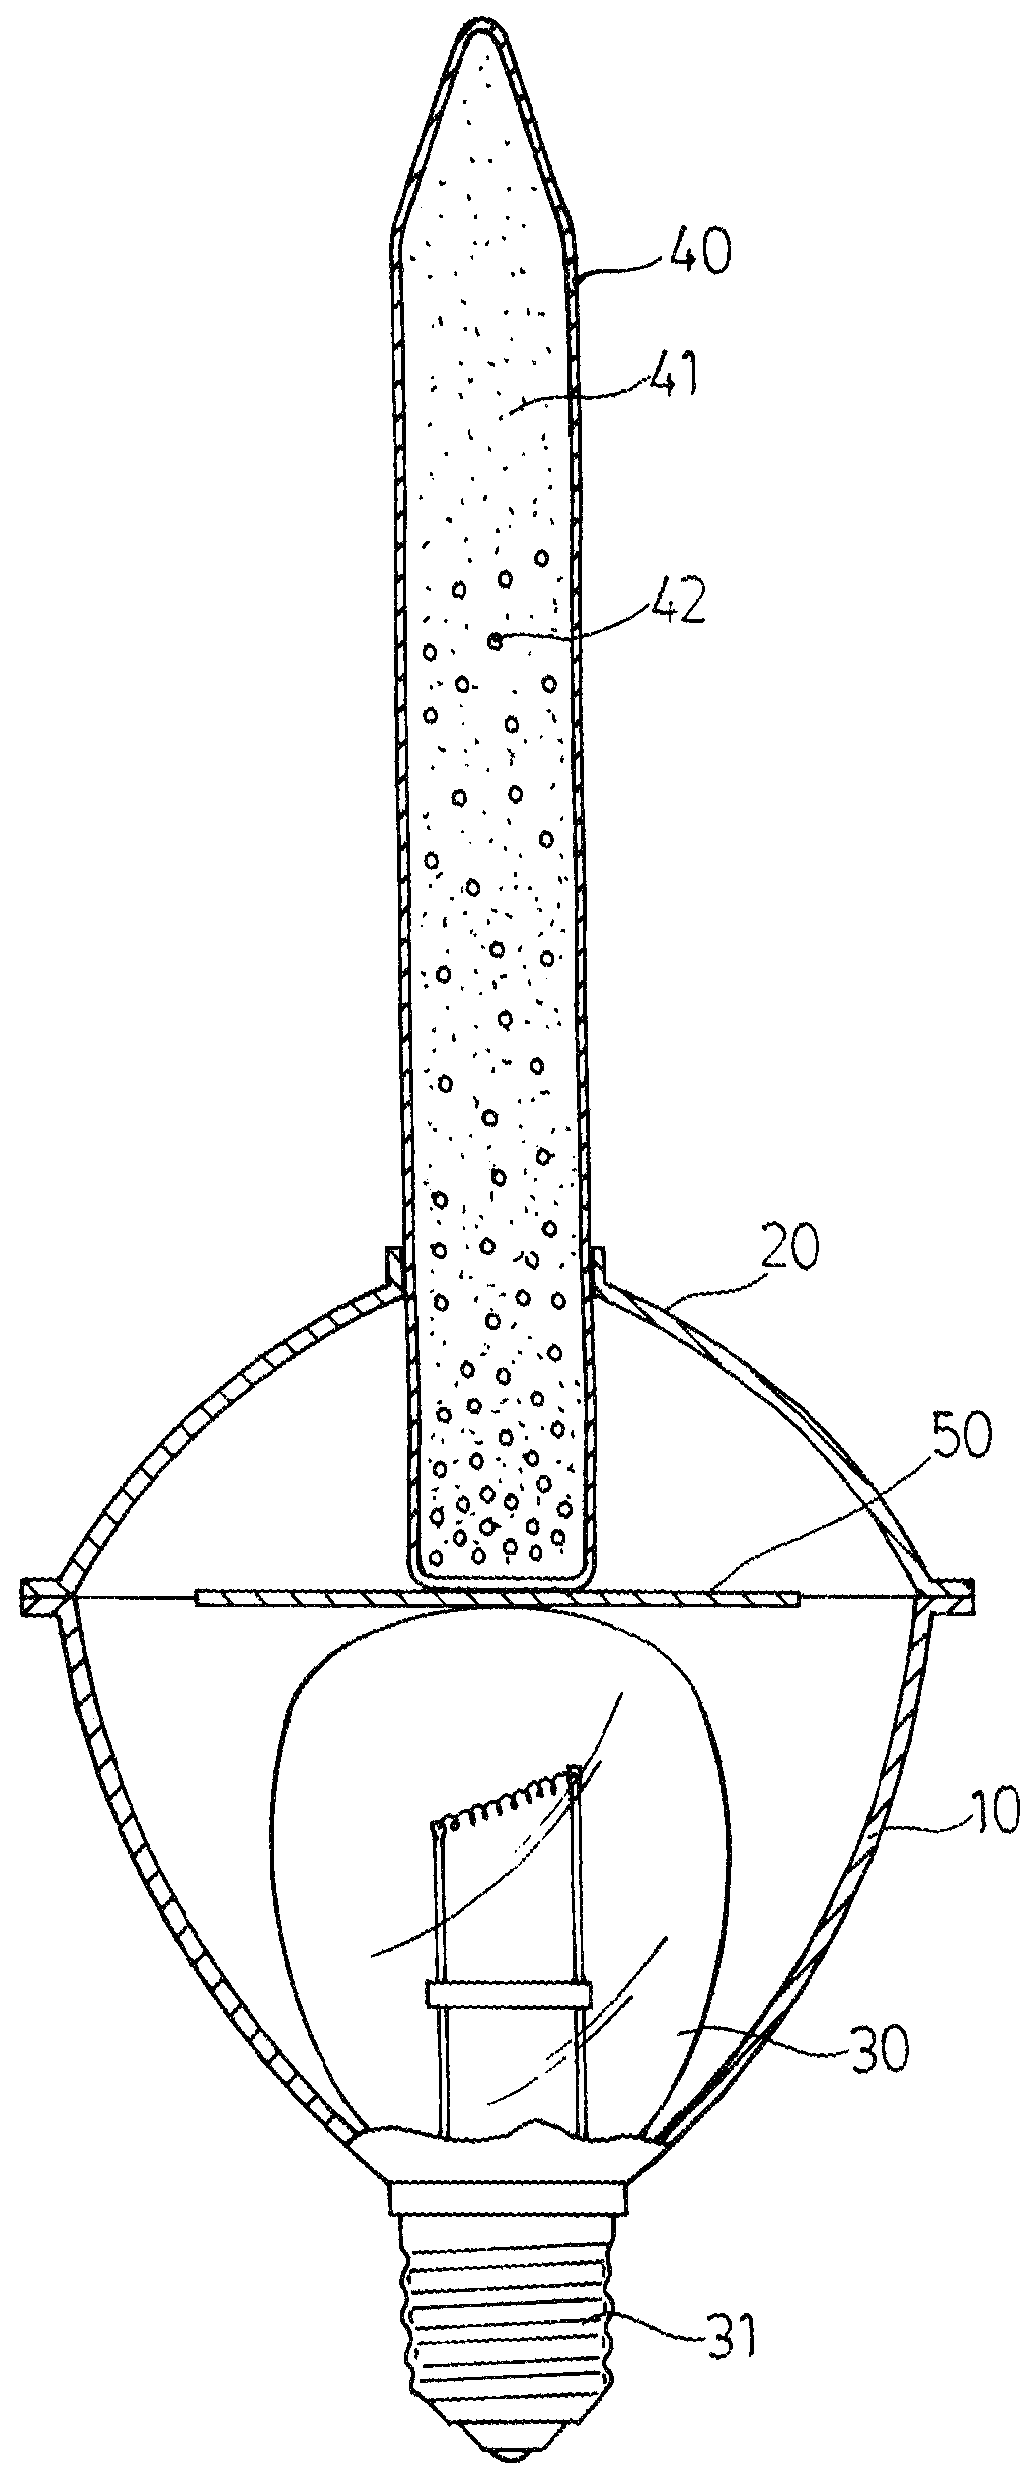 Bubble lamp structure for qusai air bubble flow